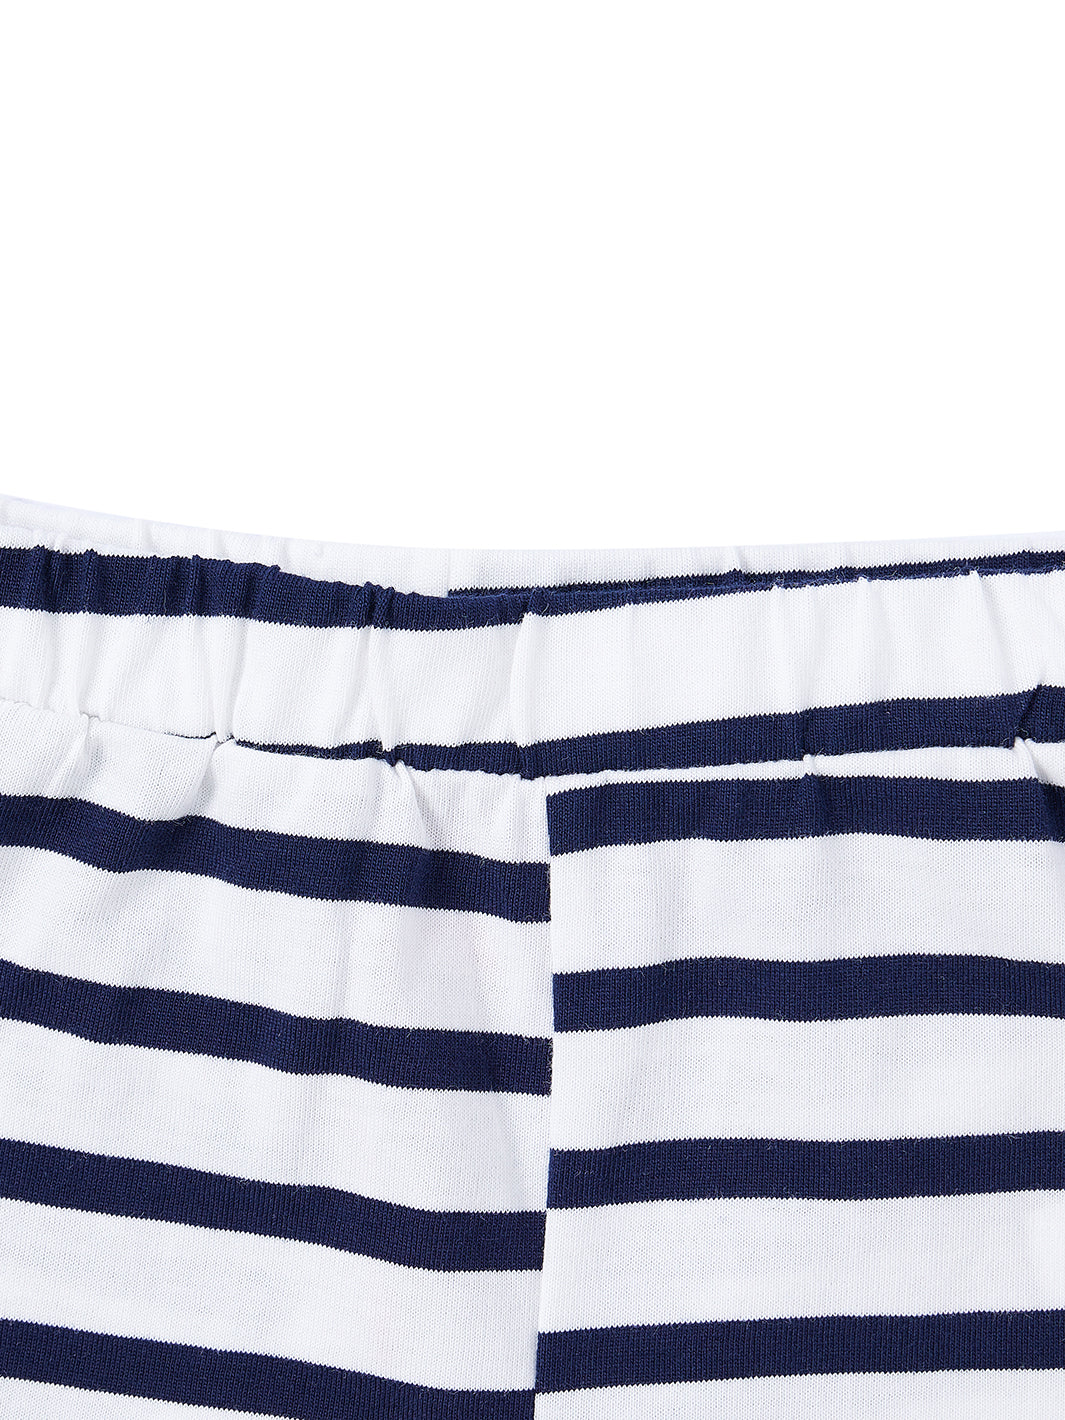 Baby stripe shorts Set